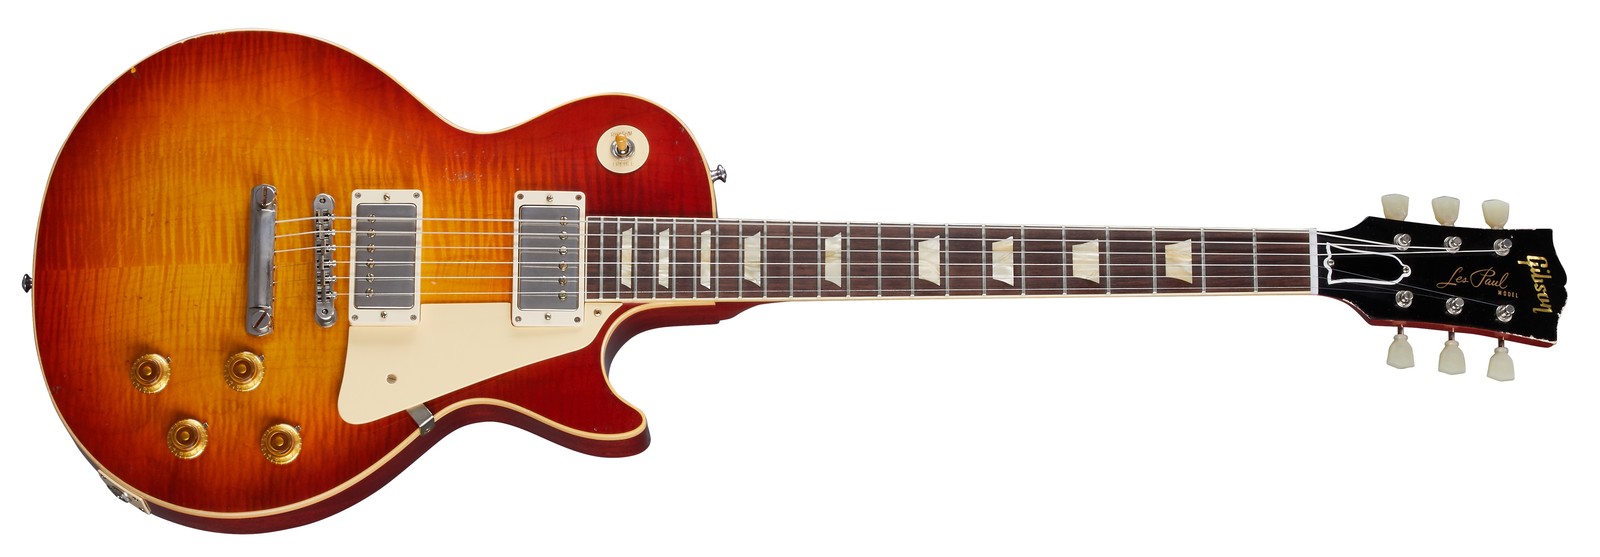 Gibson CS 1959 Les Paul Standard Reissue Light Aged Cherry Teaburst